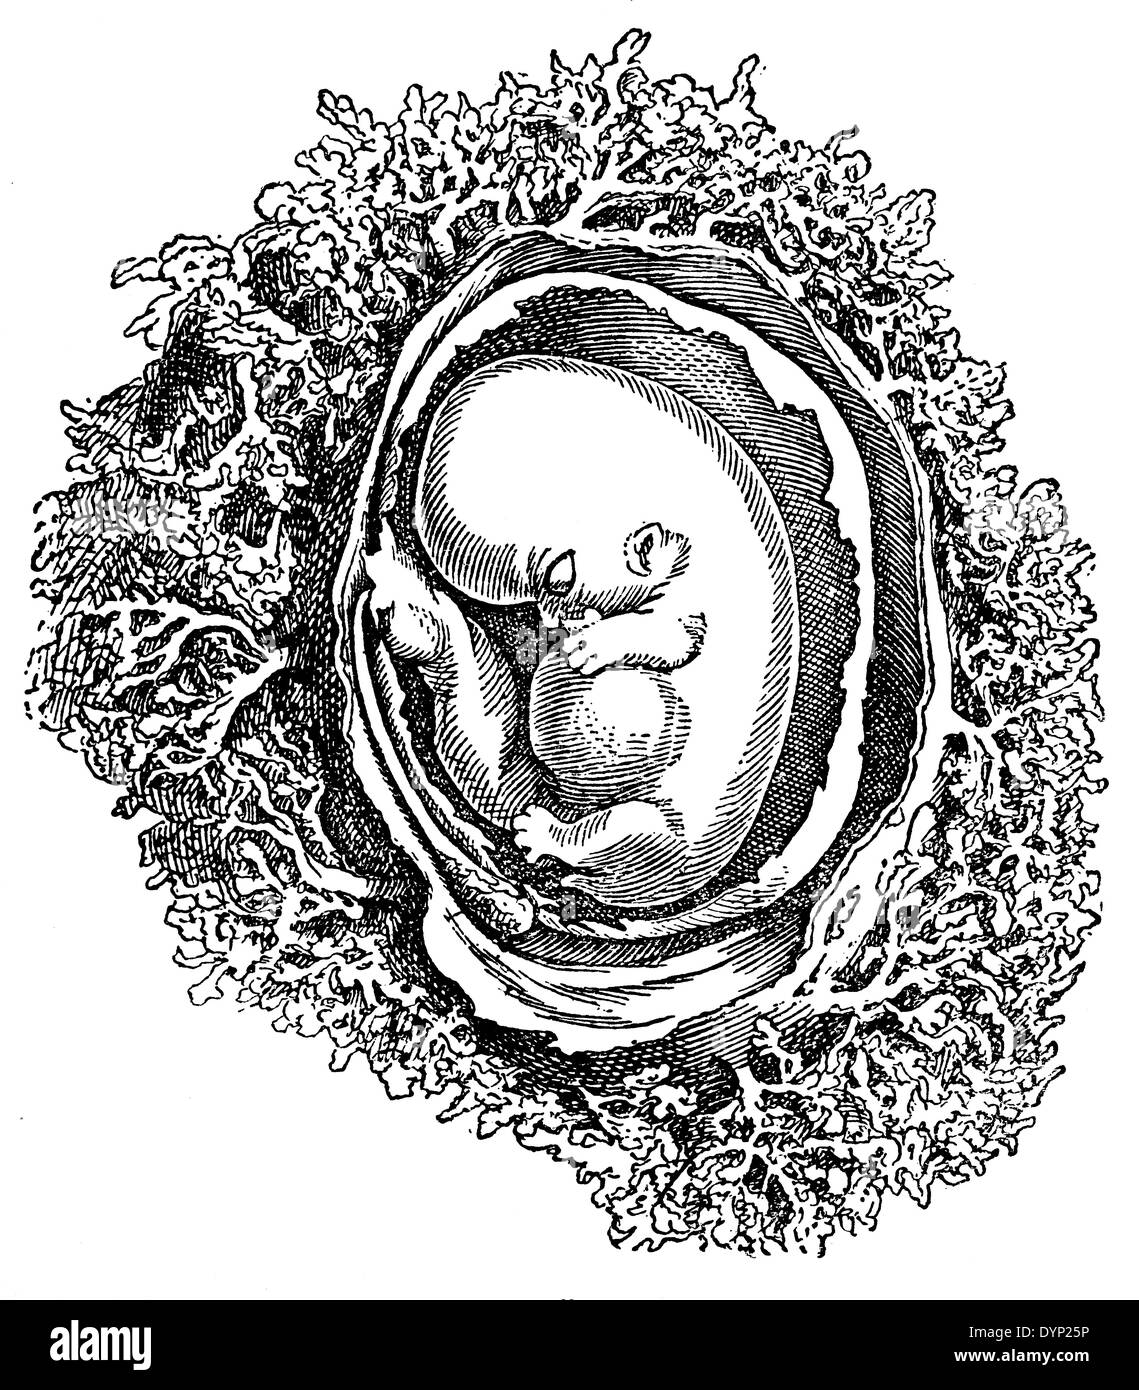 6 settimana del feto umano, illustrazione da enciclopedia sovietica, 1927 Foto Stock